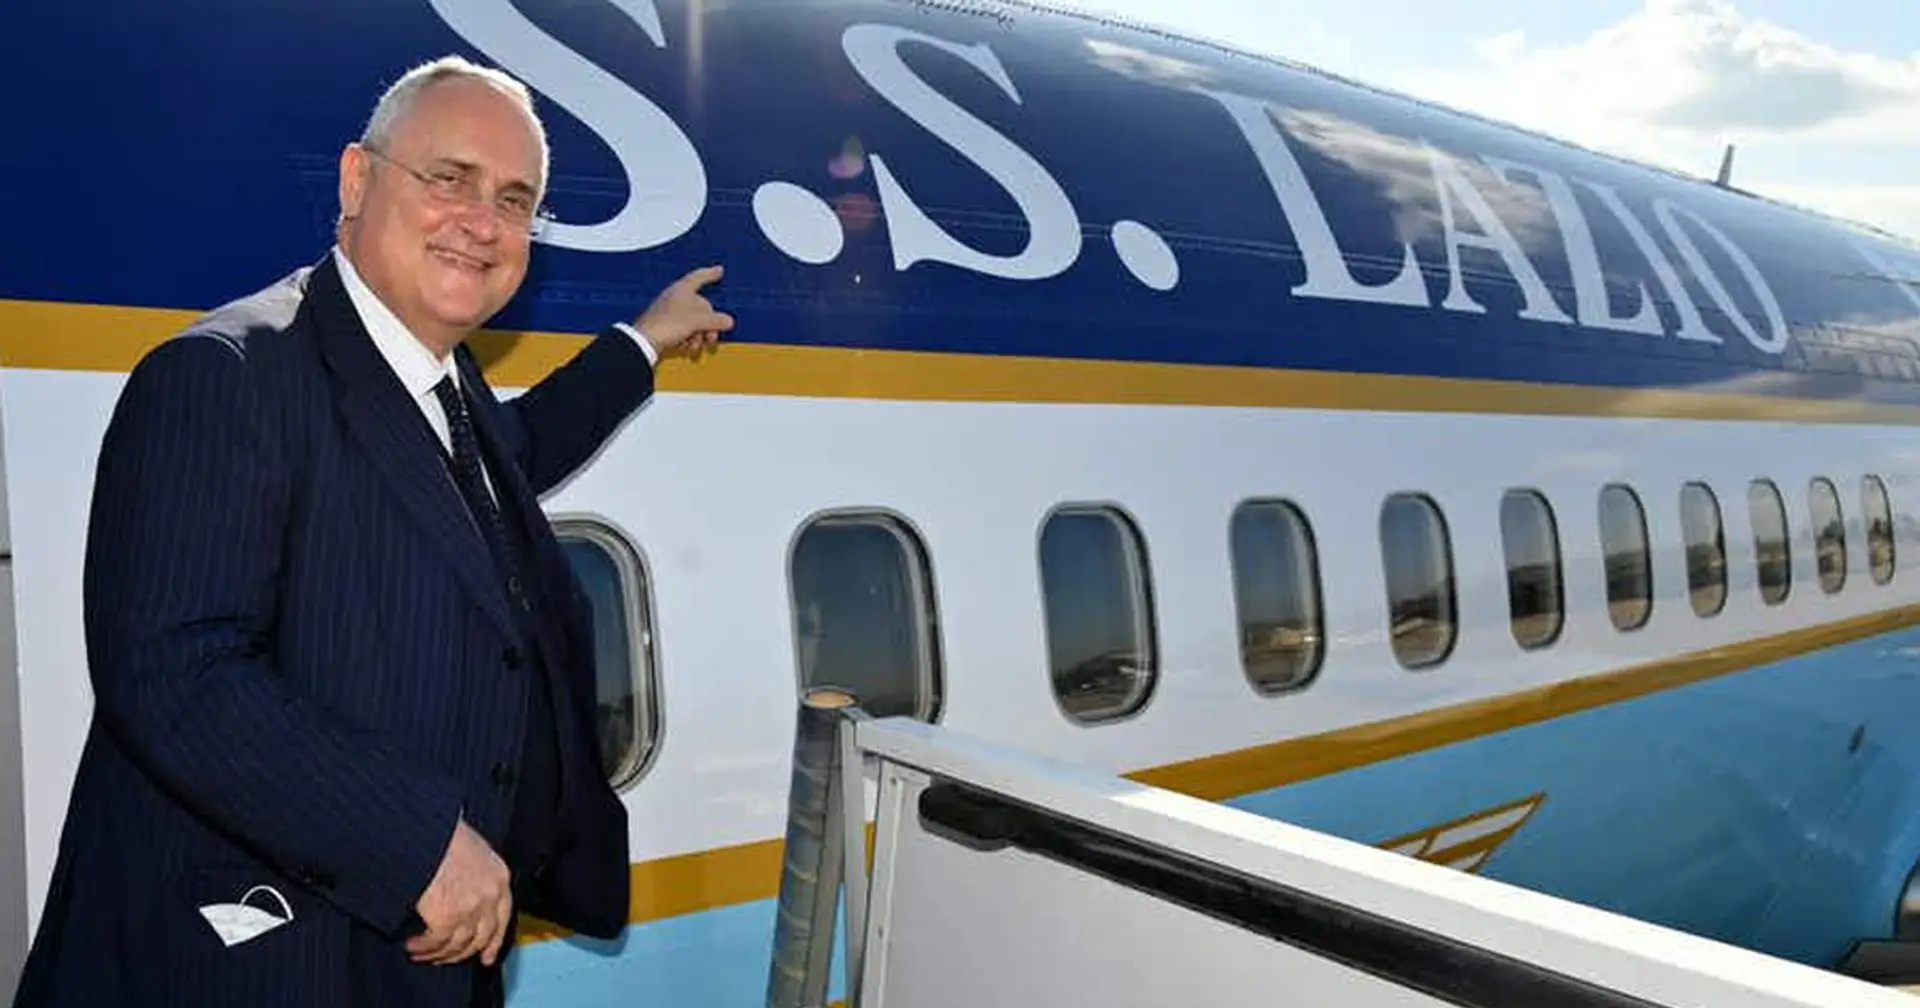 Giocatori terrorizzati e ritorno cancellato: il primo volo dell'aereo della Lazio voluto da Lotito è da dimenticare